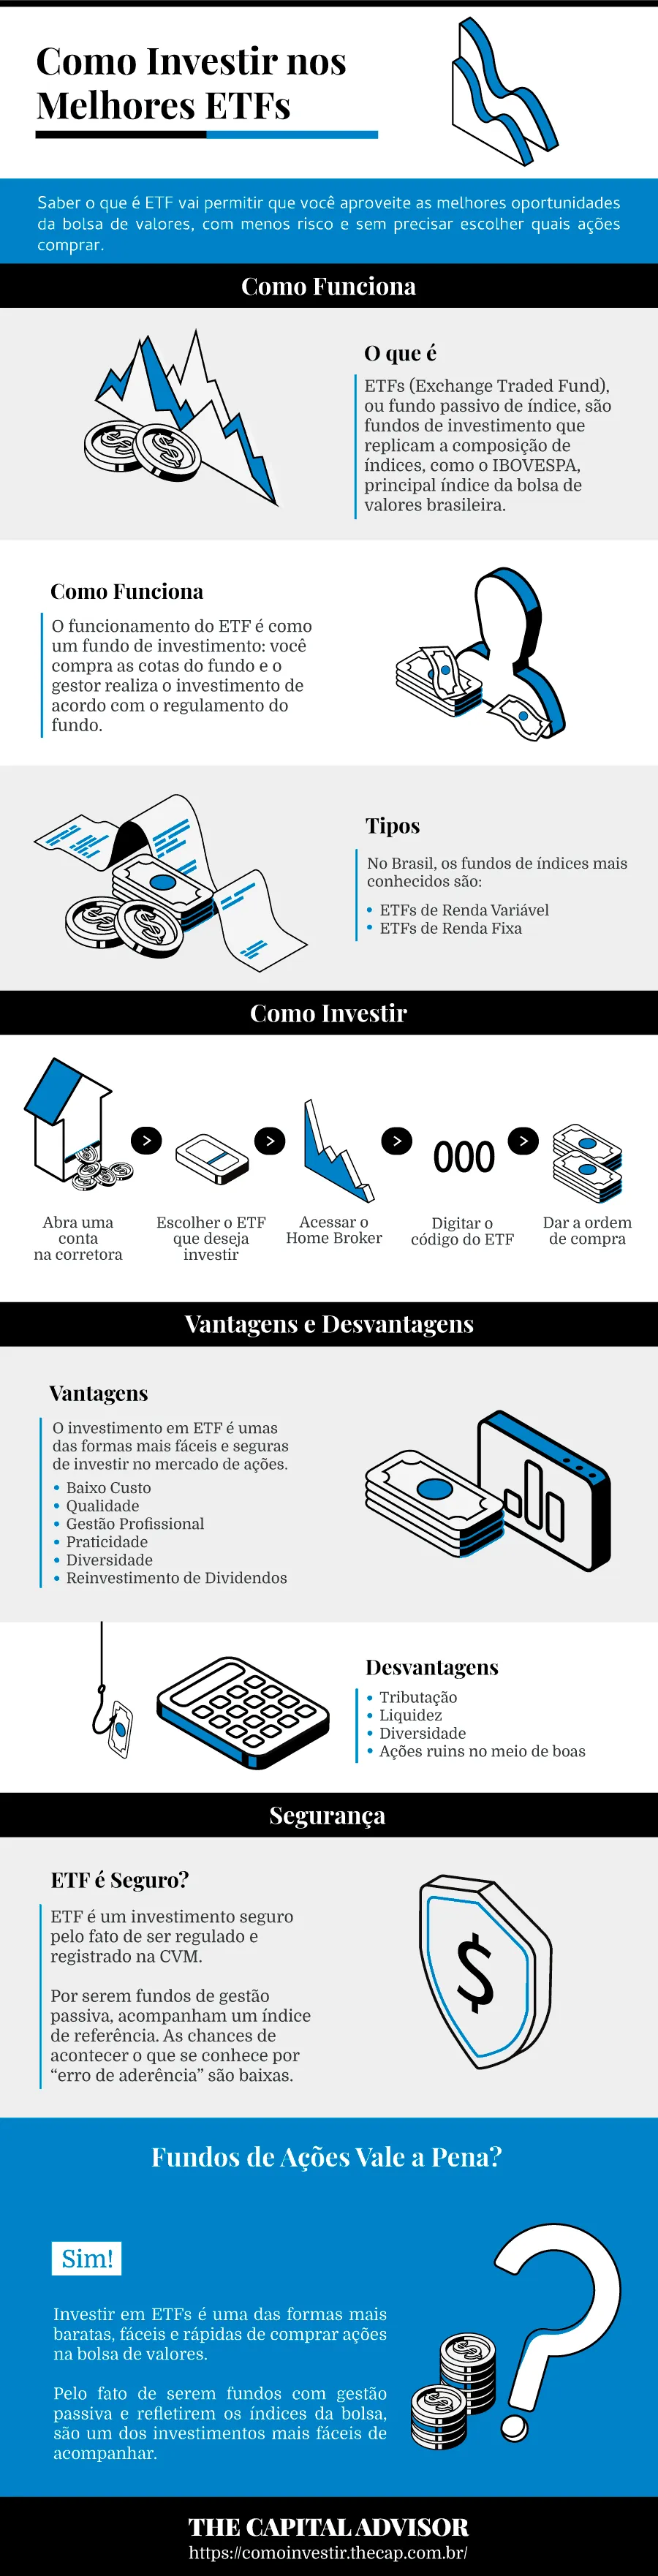 Infográfico: como investir em ETFs